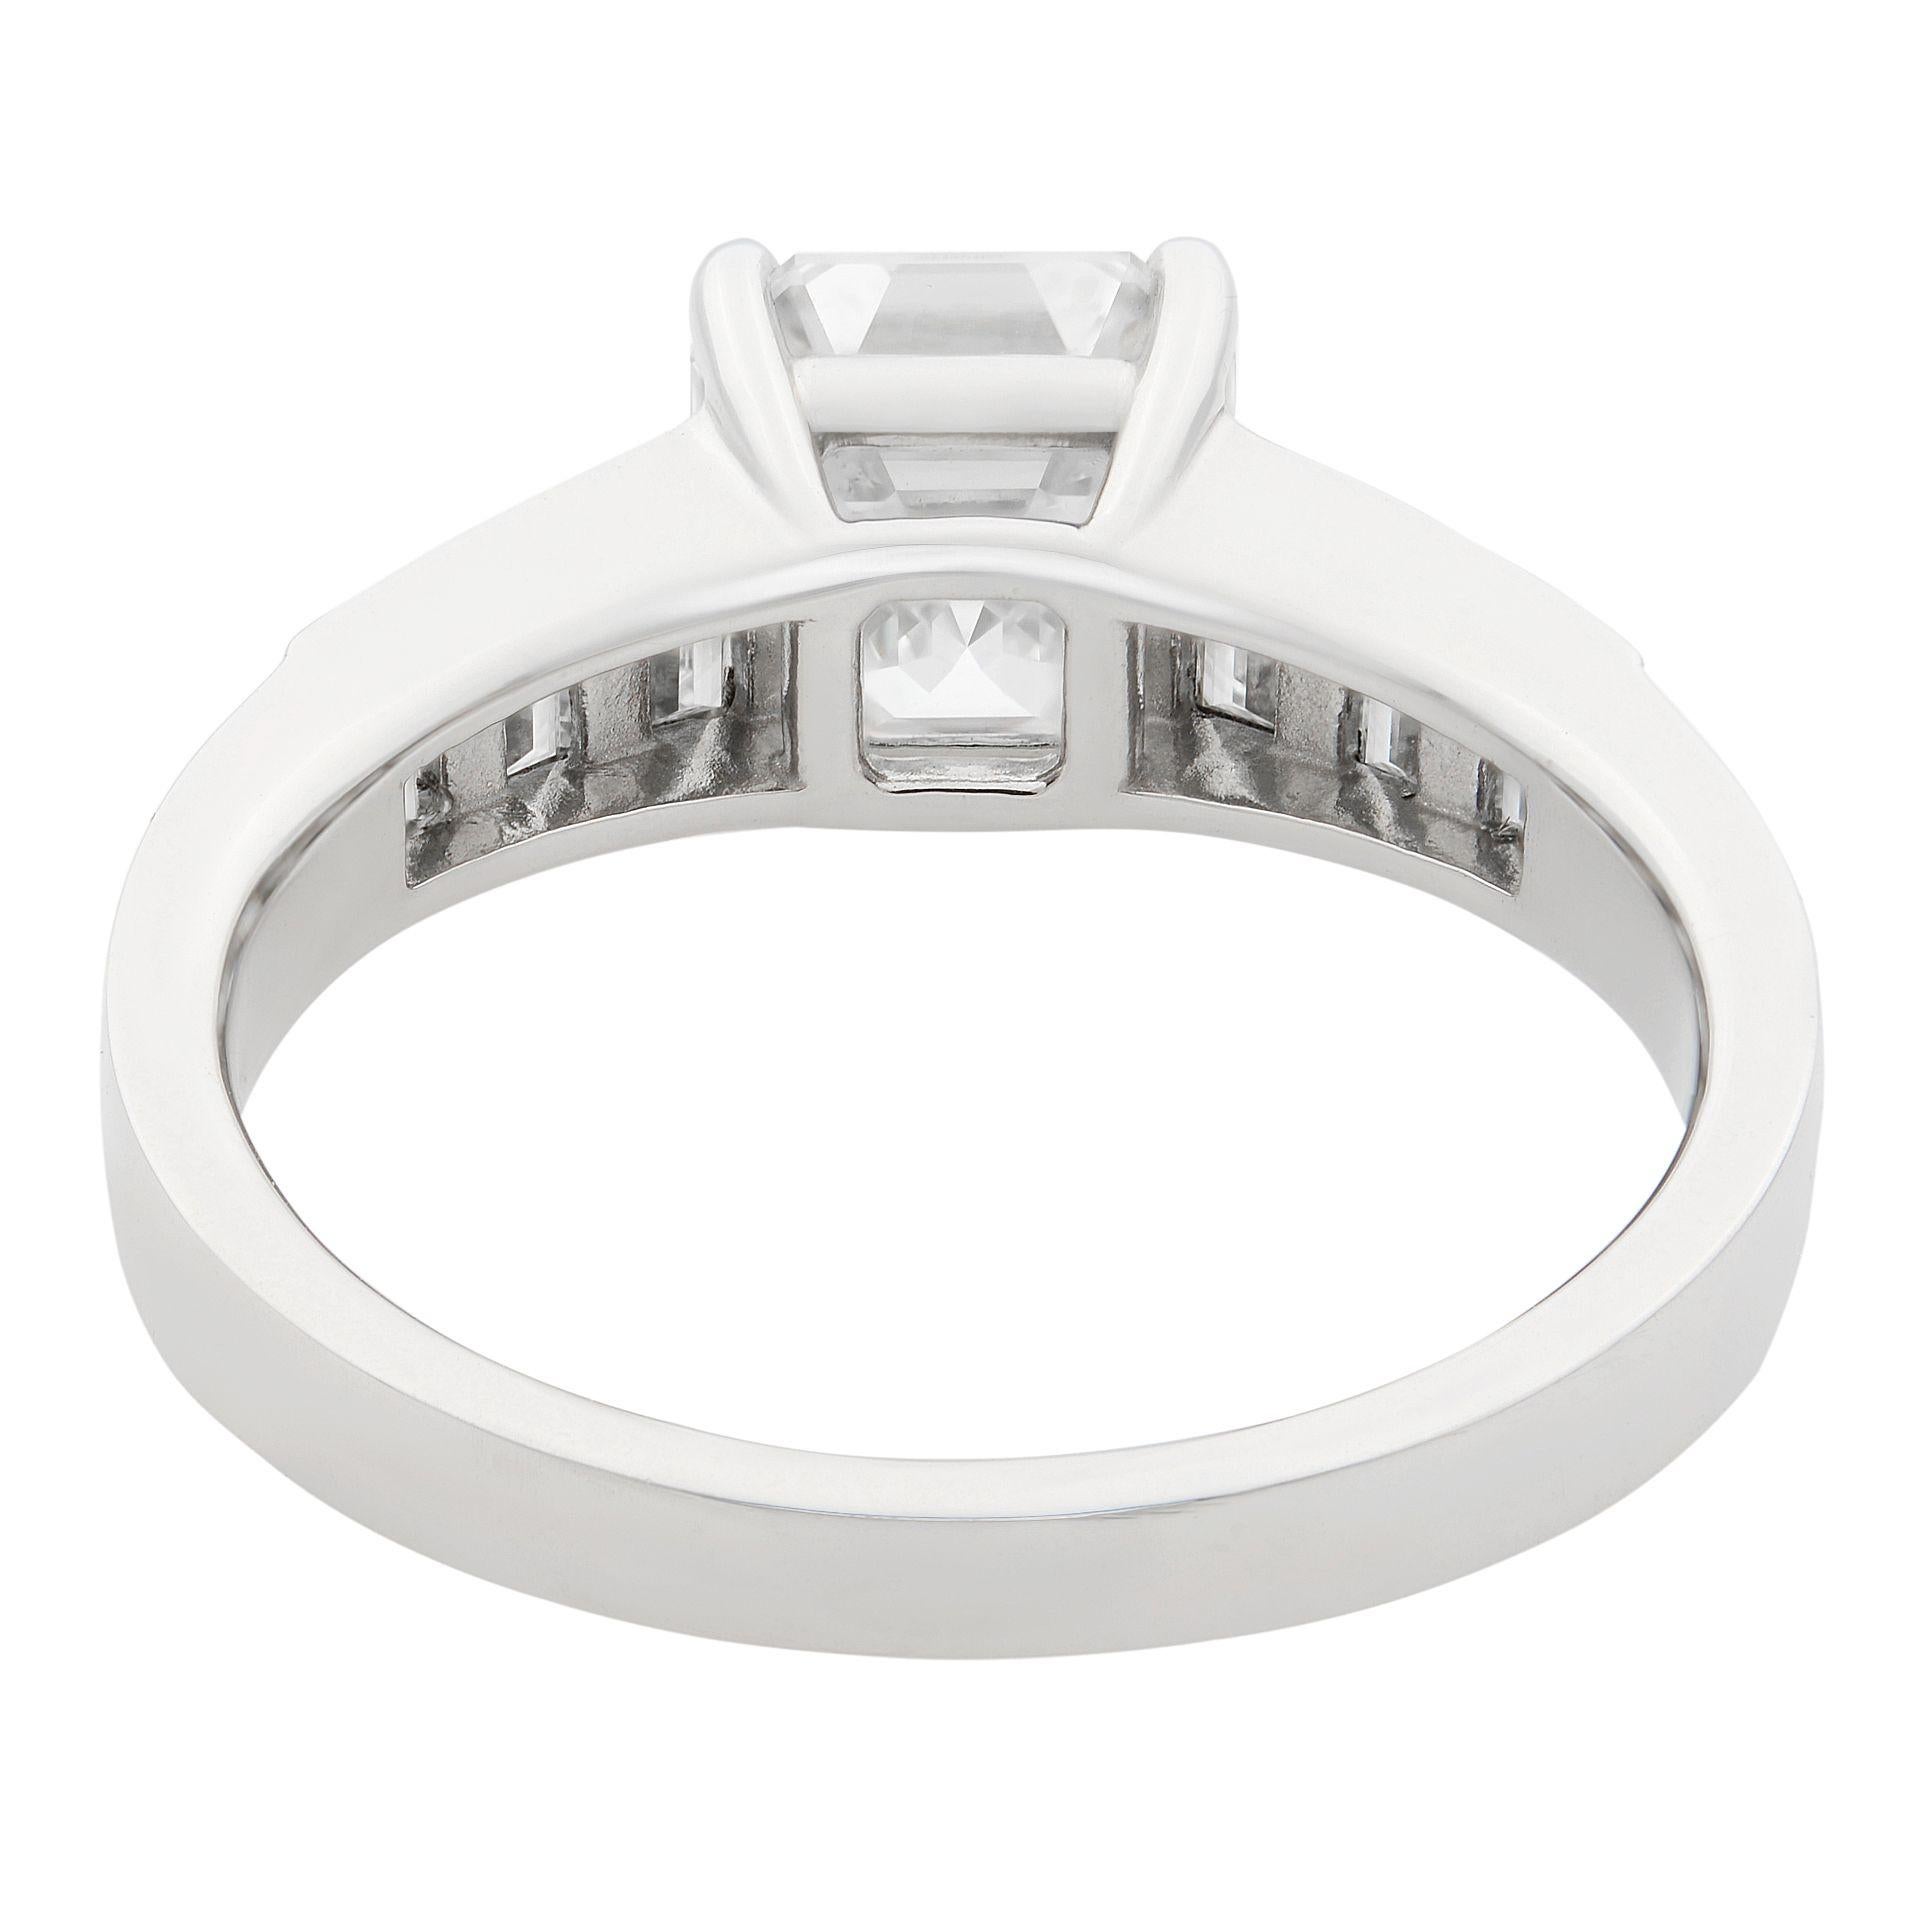 Asscher Cut Rachel Koen 18 Karat White Gold Square Emerald Cut Diamond Ring 2.21 Carat For Sale